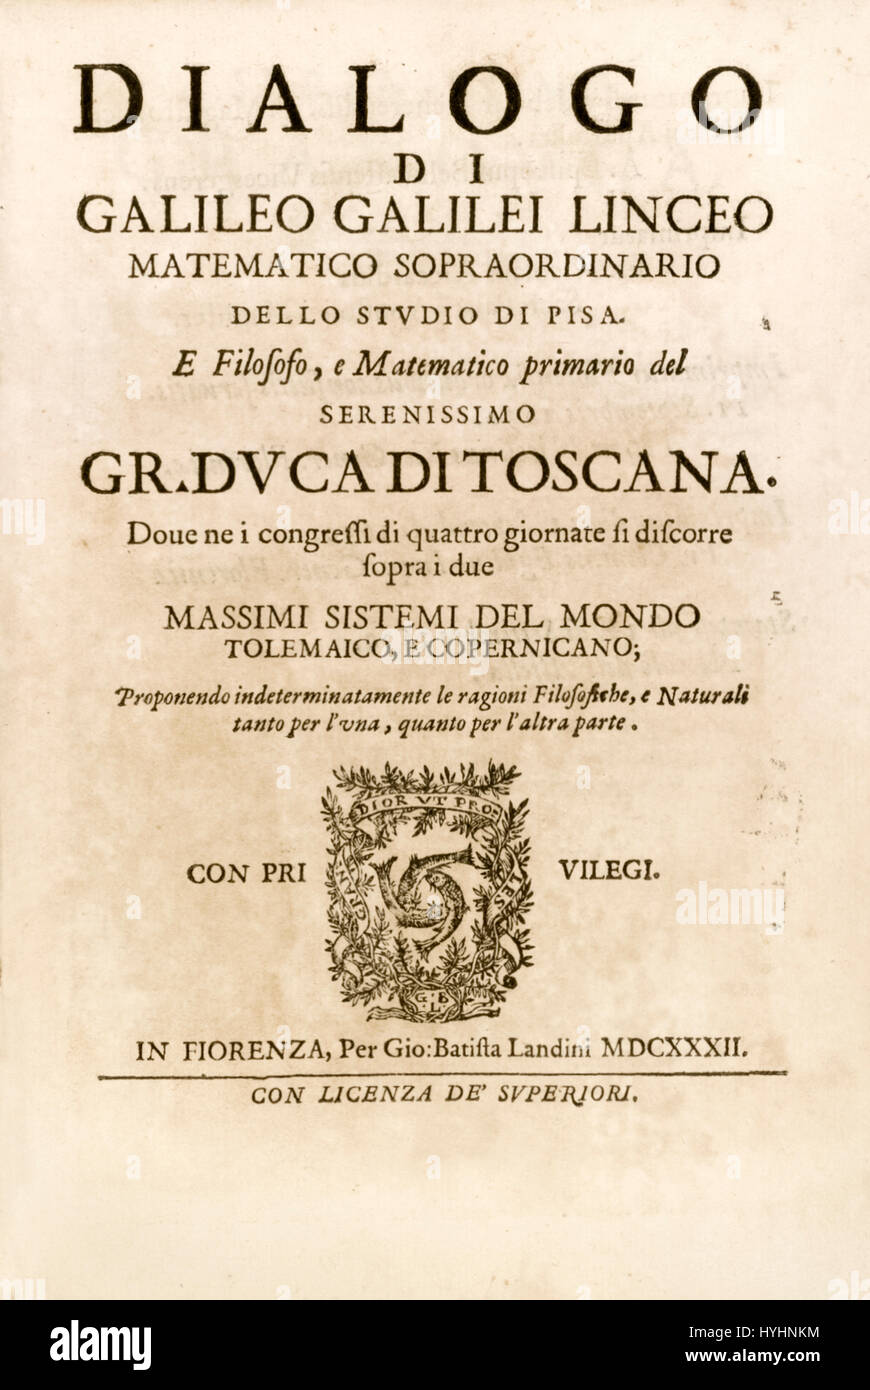 Titelseite von "Dialogo di Galileo Galilei Linceo, Matematico Sopra Ordinario" (Dialog über die zwei Chief Weltsysteme) von Galileo Galilei (1564-1642) italienischer Universalgelehrter in denen hält er die Verdienste des kopernikanischen Computerbeweises und ptolemäische System veröffentlicht im Jahr 1632. Stockfoto